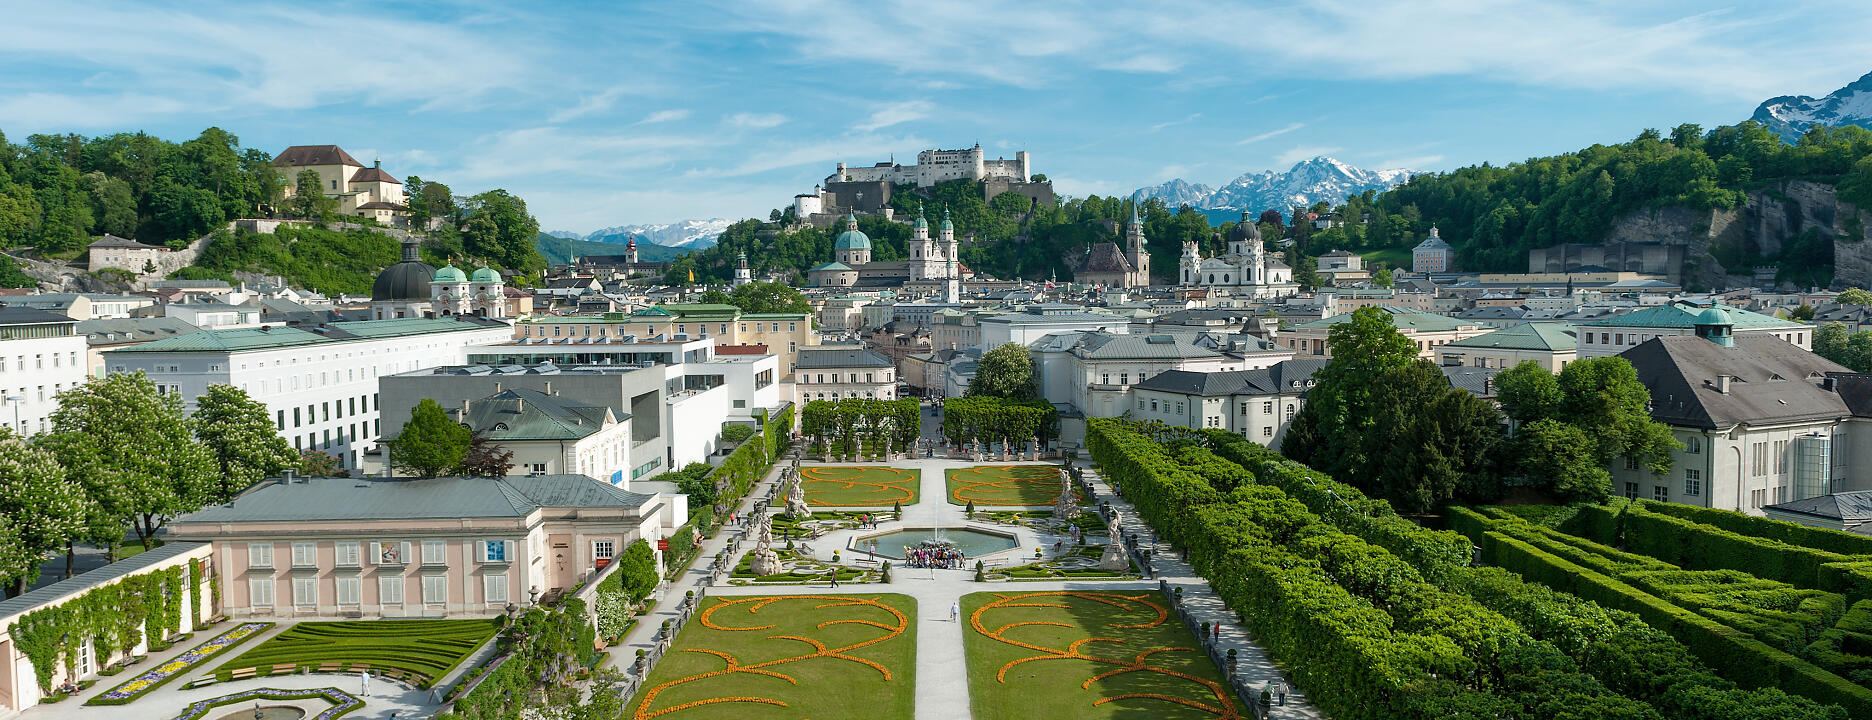 Sicht auf die Stadt Salzburg vom Mirabellgarten 